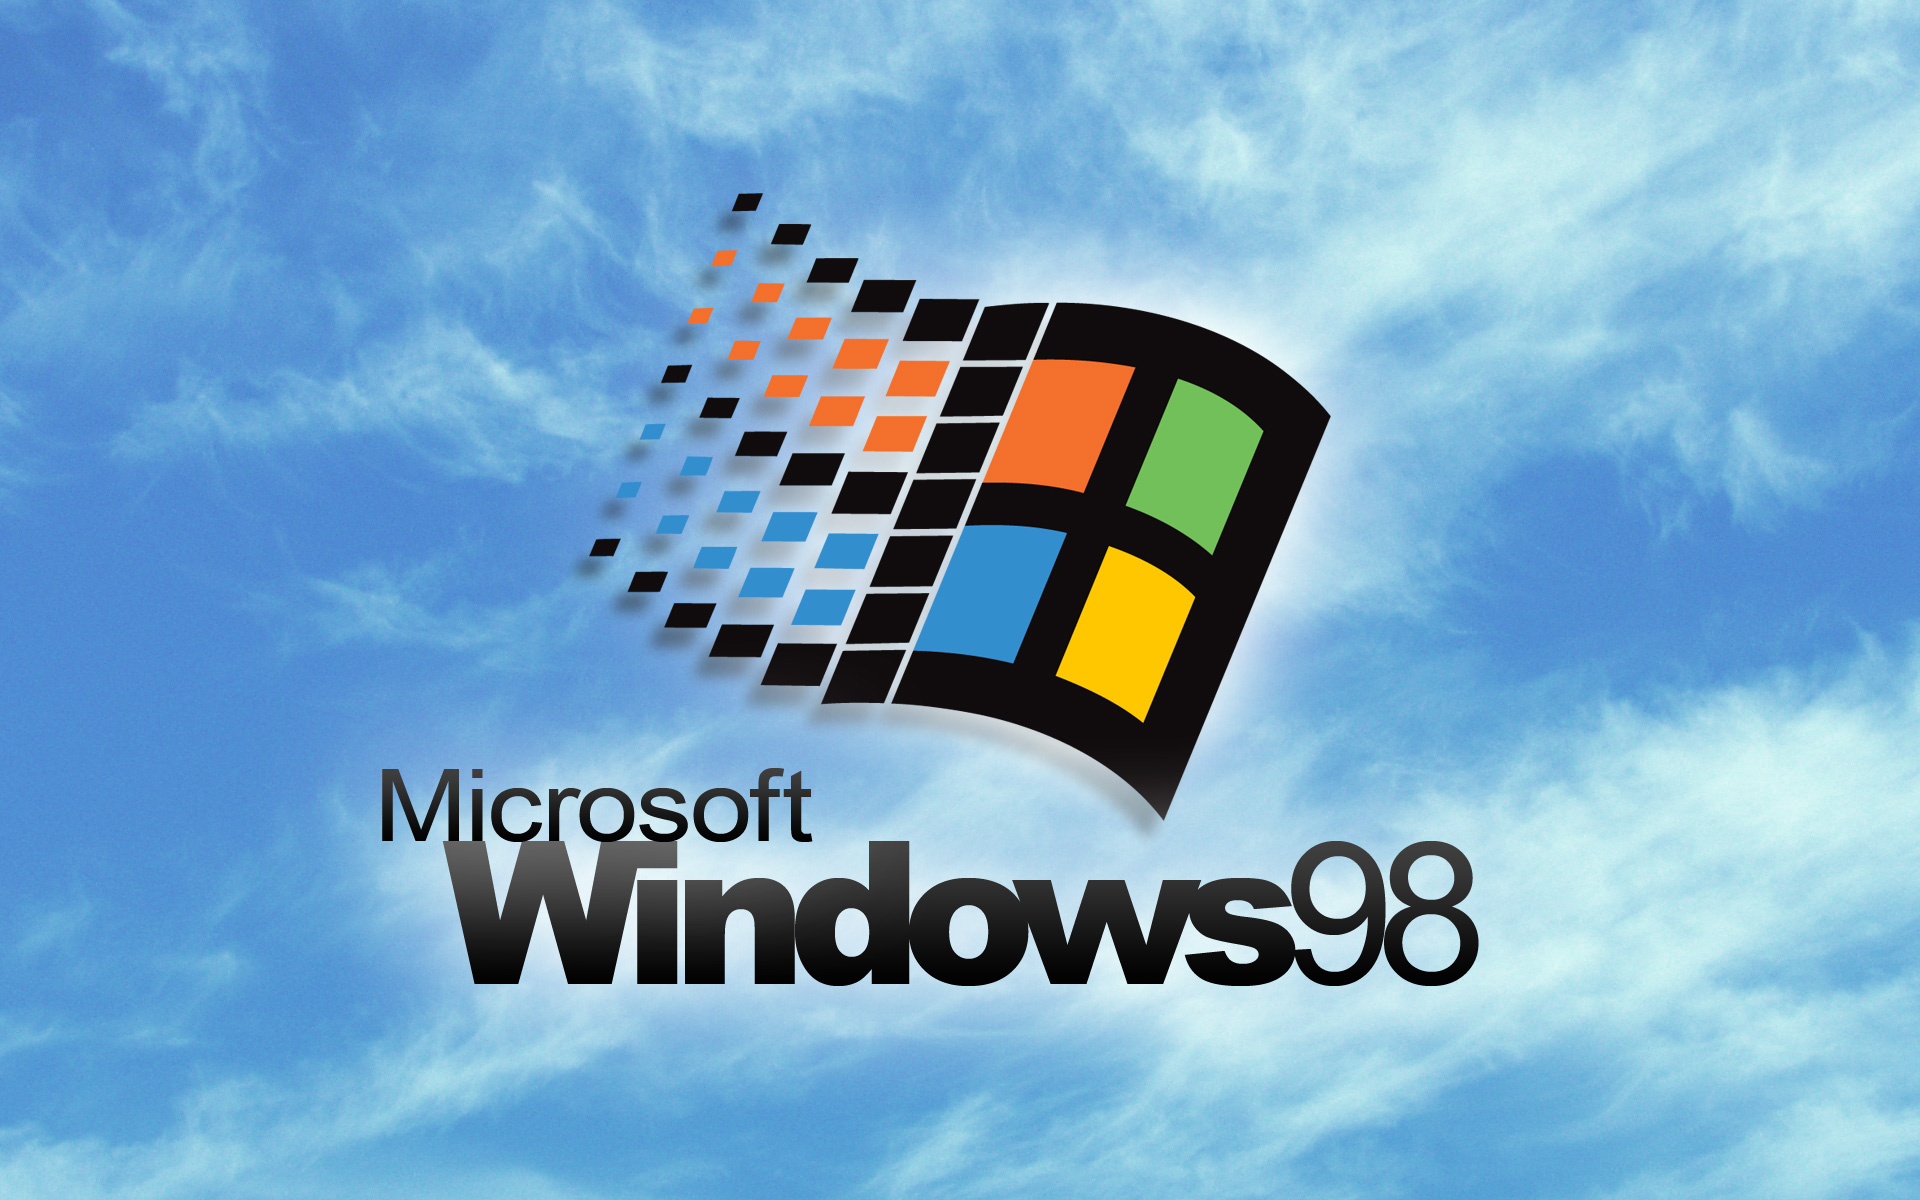 Resultado de imagen para windows 98 logo